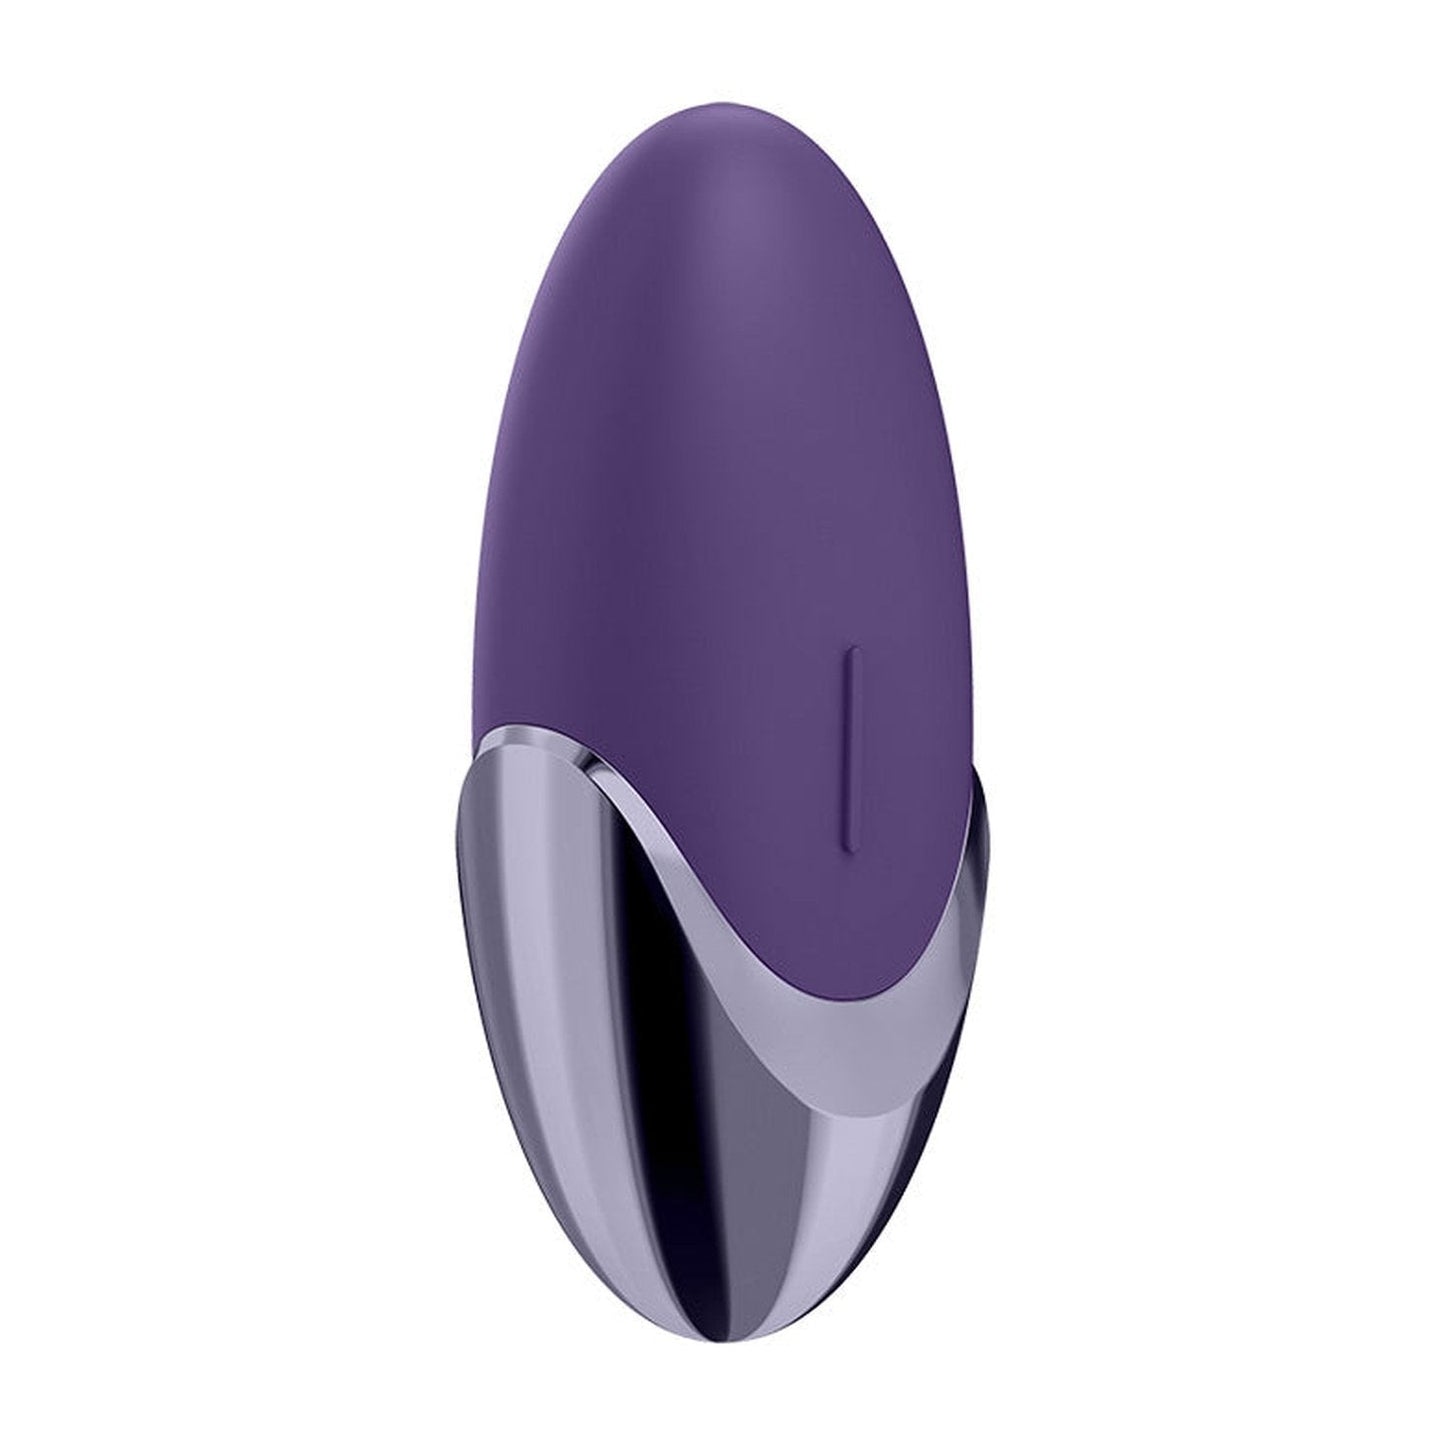 Purple Pleasure - Lay-on Vibrator